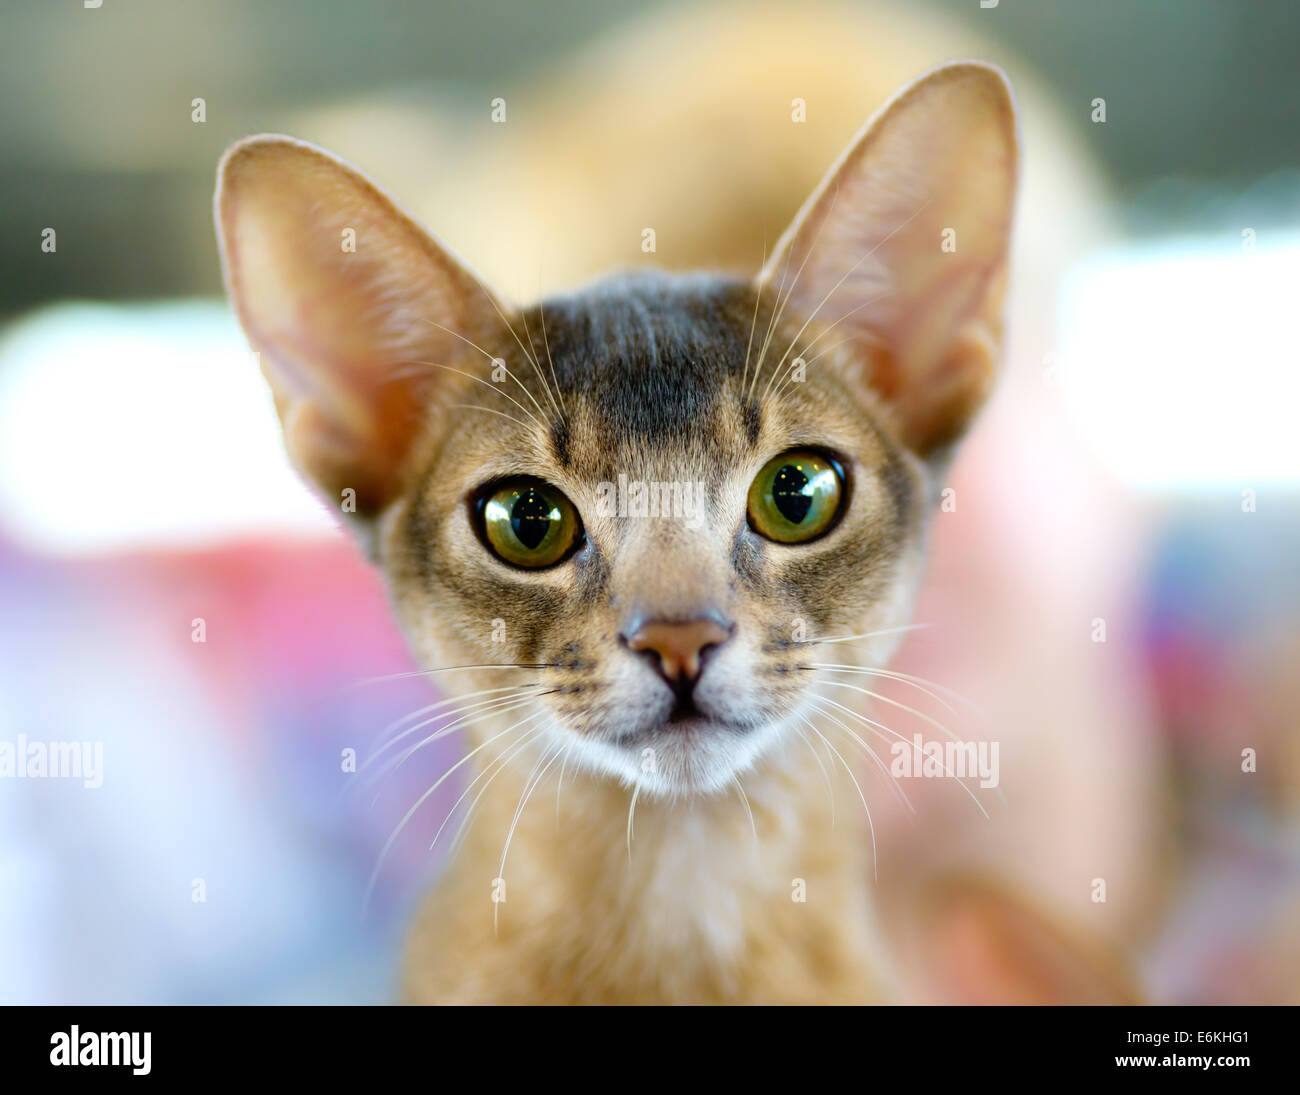 Animales: close-up retrato de joven gato abisinio Foto de stock